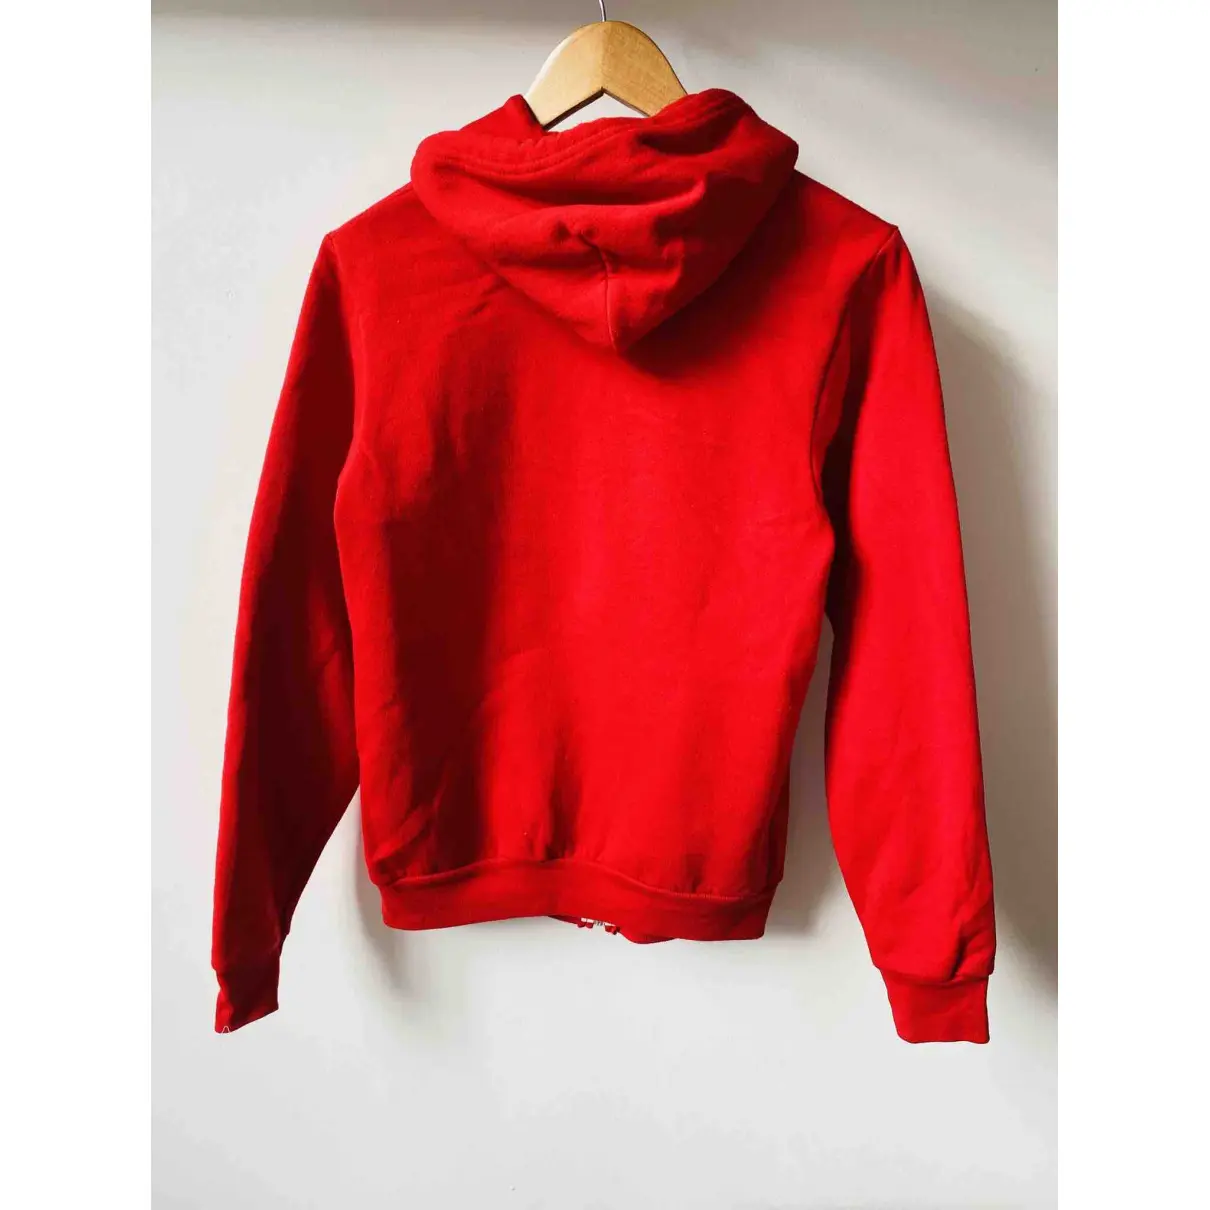 Buy American Apparel Red Cotton Knitwear & Sweatshirt online